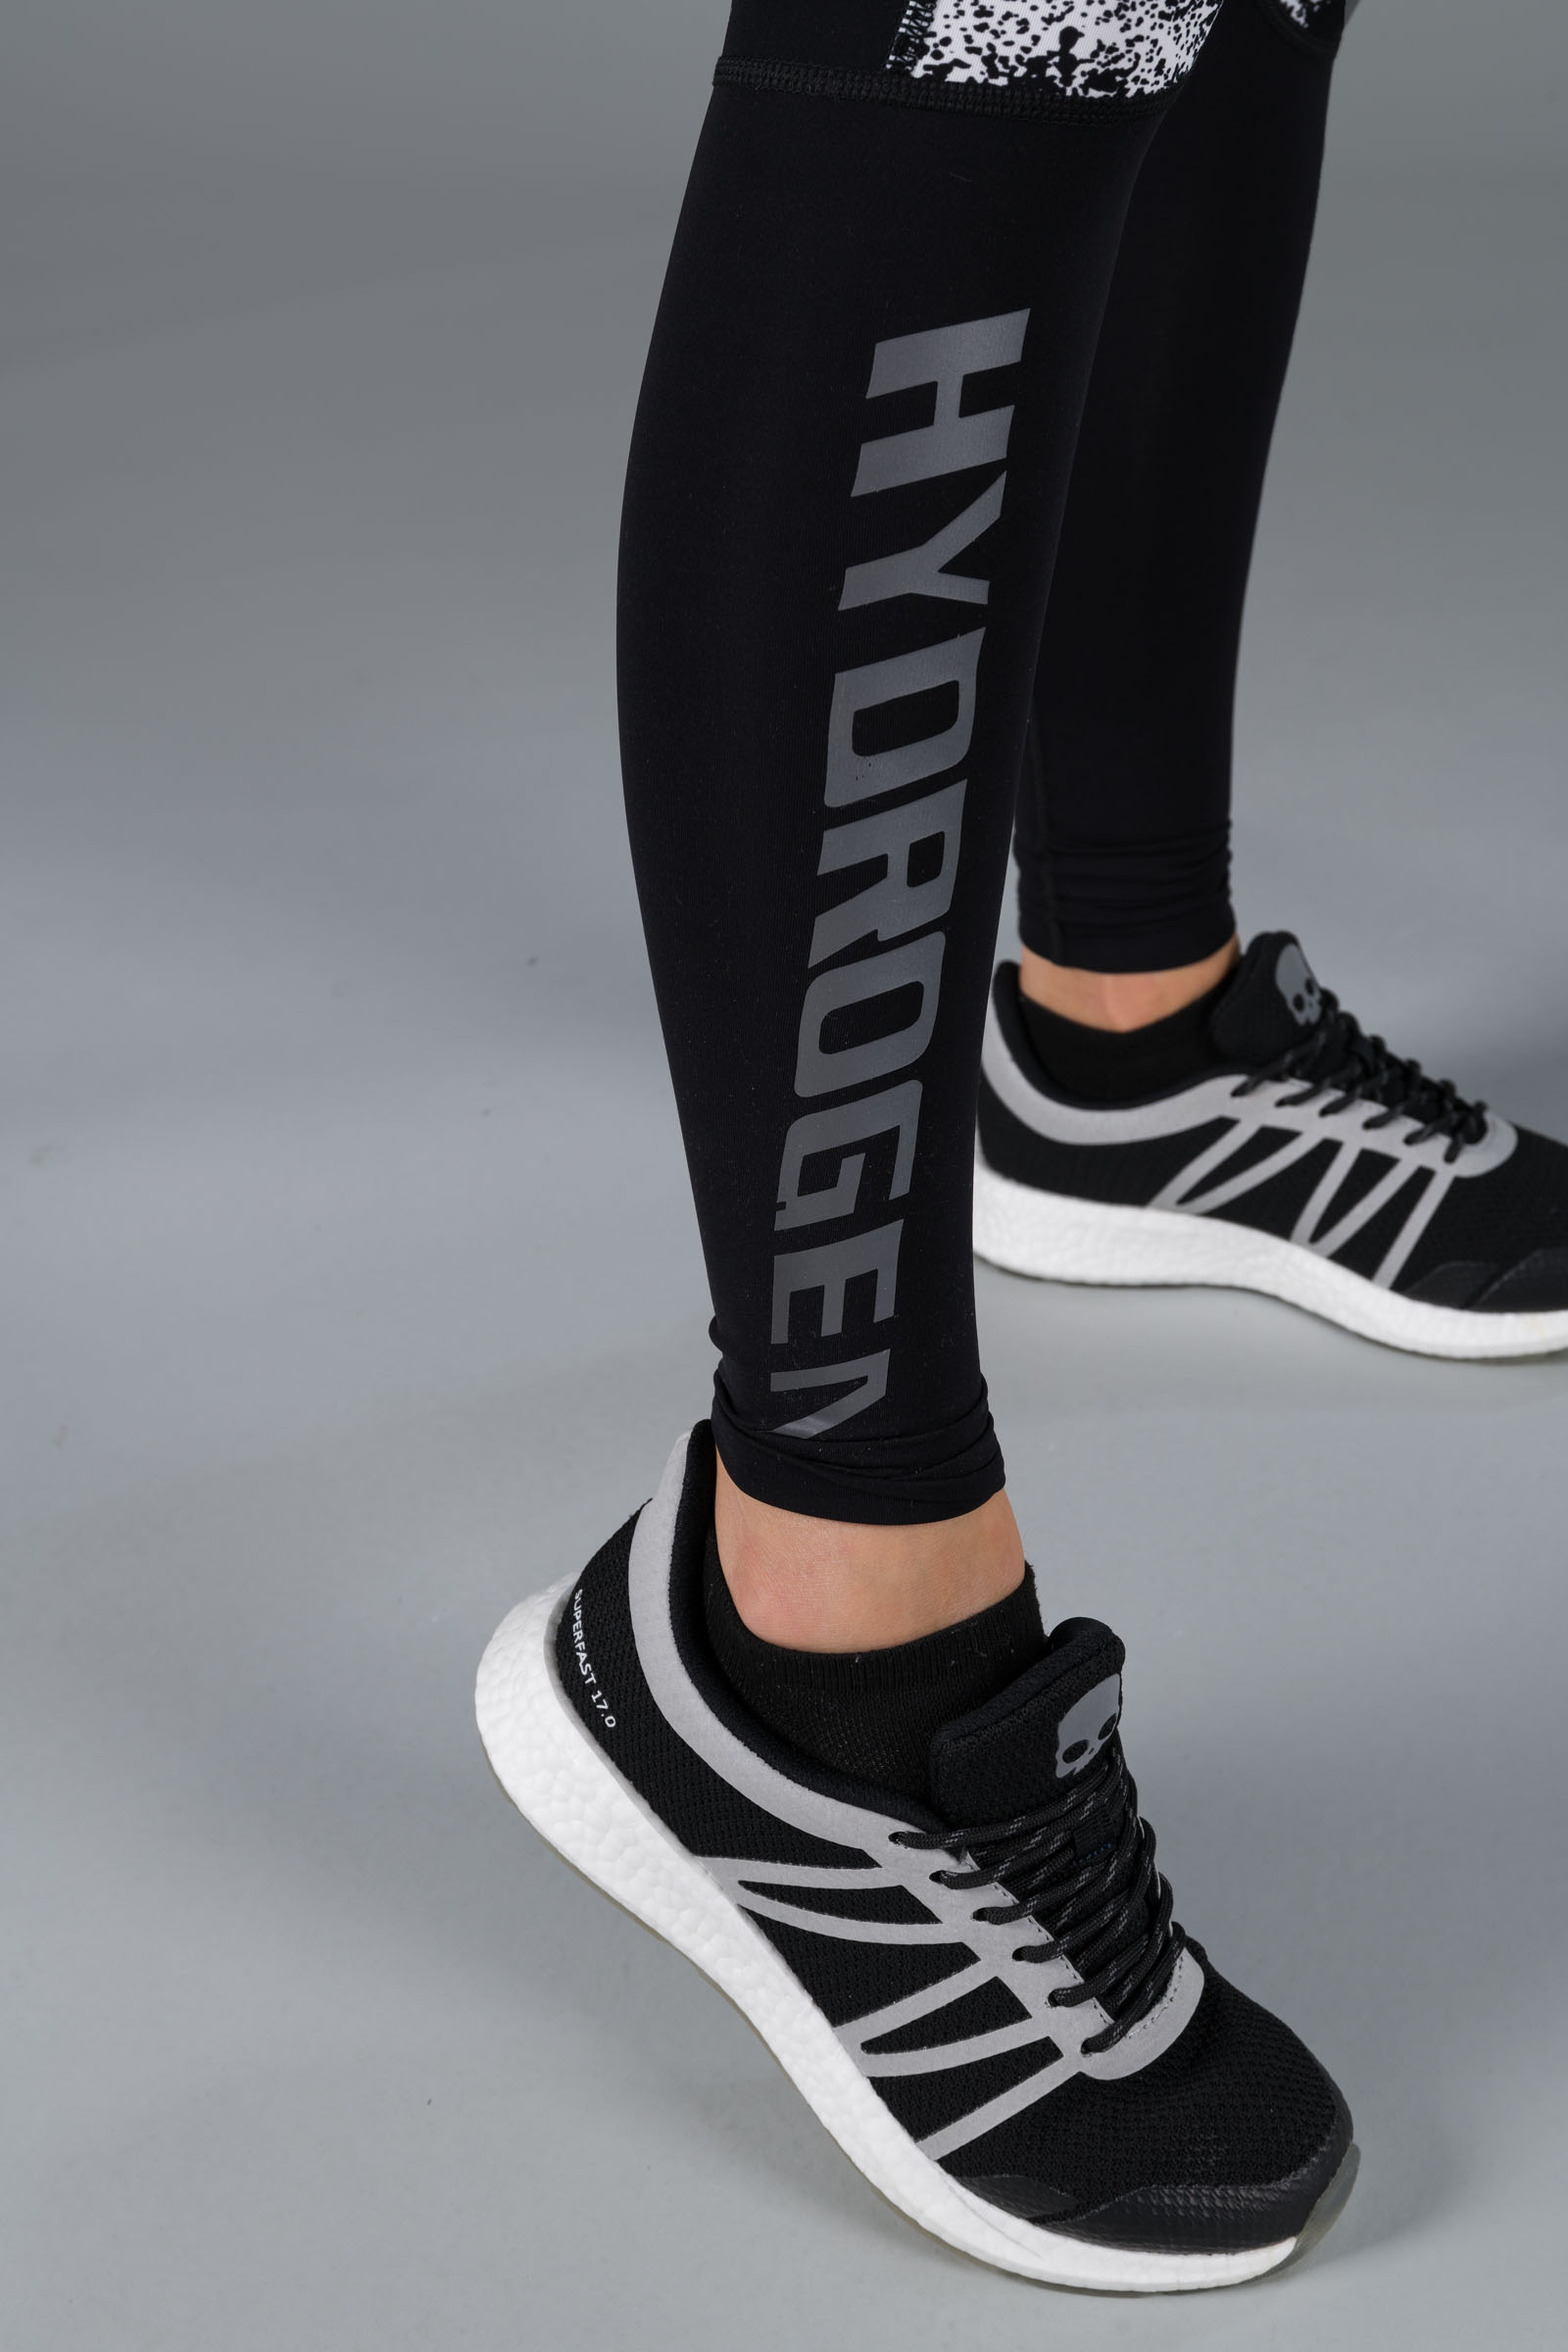 SPRAY LEGGINGS - WHITE/BLACK - Abbigliamento sportivo | Hydrogen